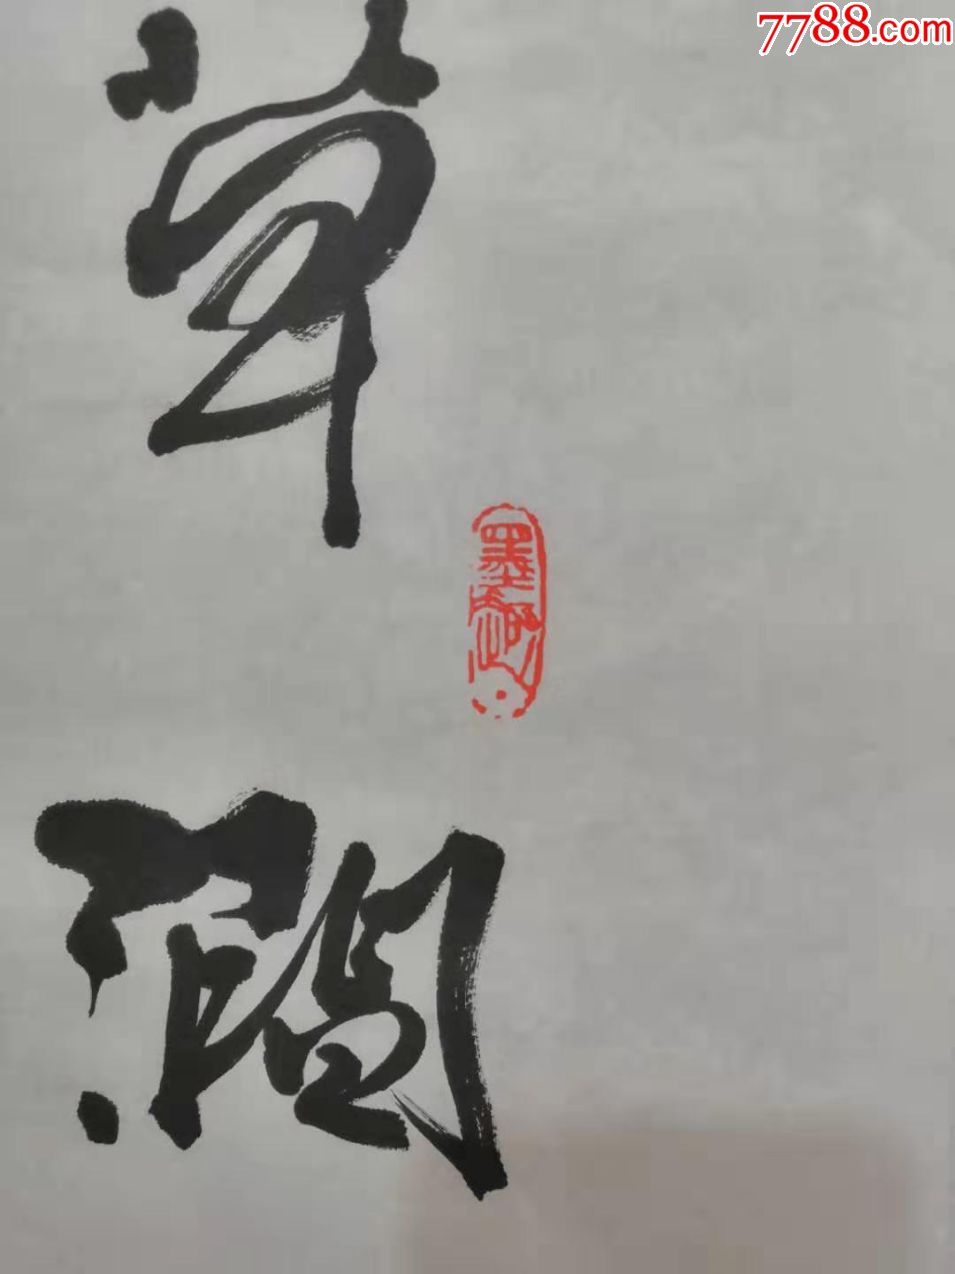 【冯国语】有"云南第一笔"的美称九州书画院院长书法真迹